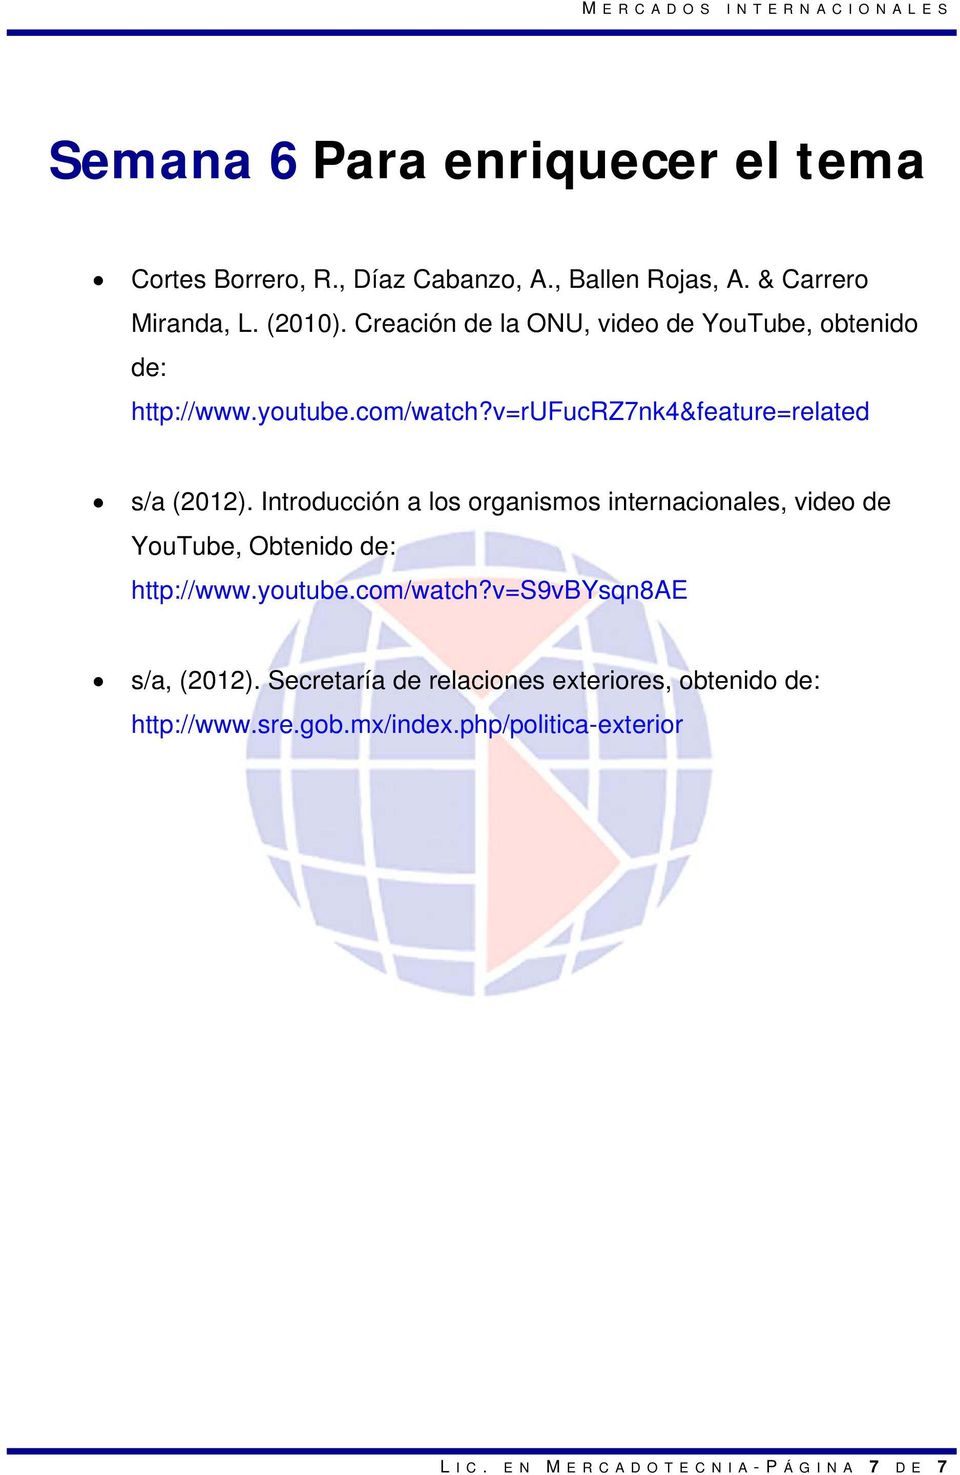 Introducción a los organismos internacionales, video de YouTube, Obtenido de: http://www.youtube.com/watch?